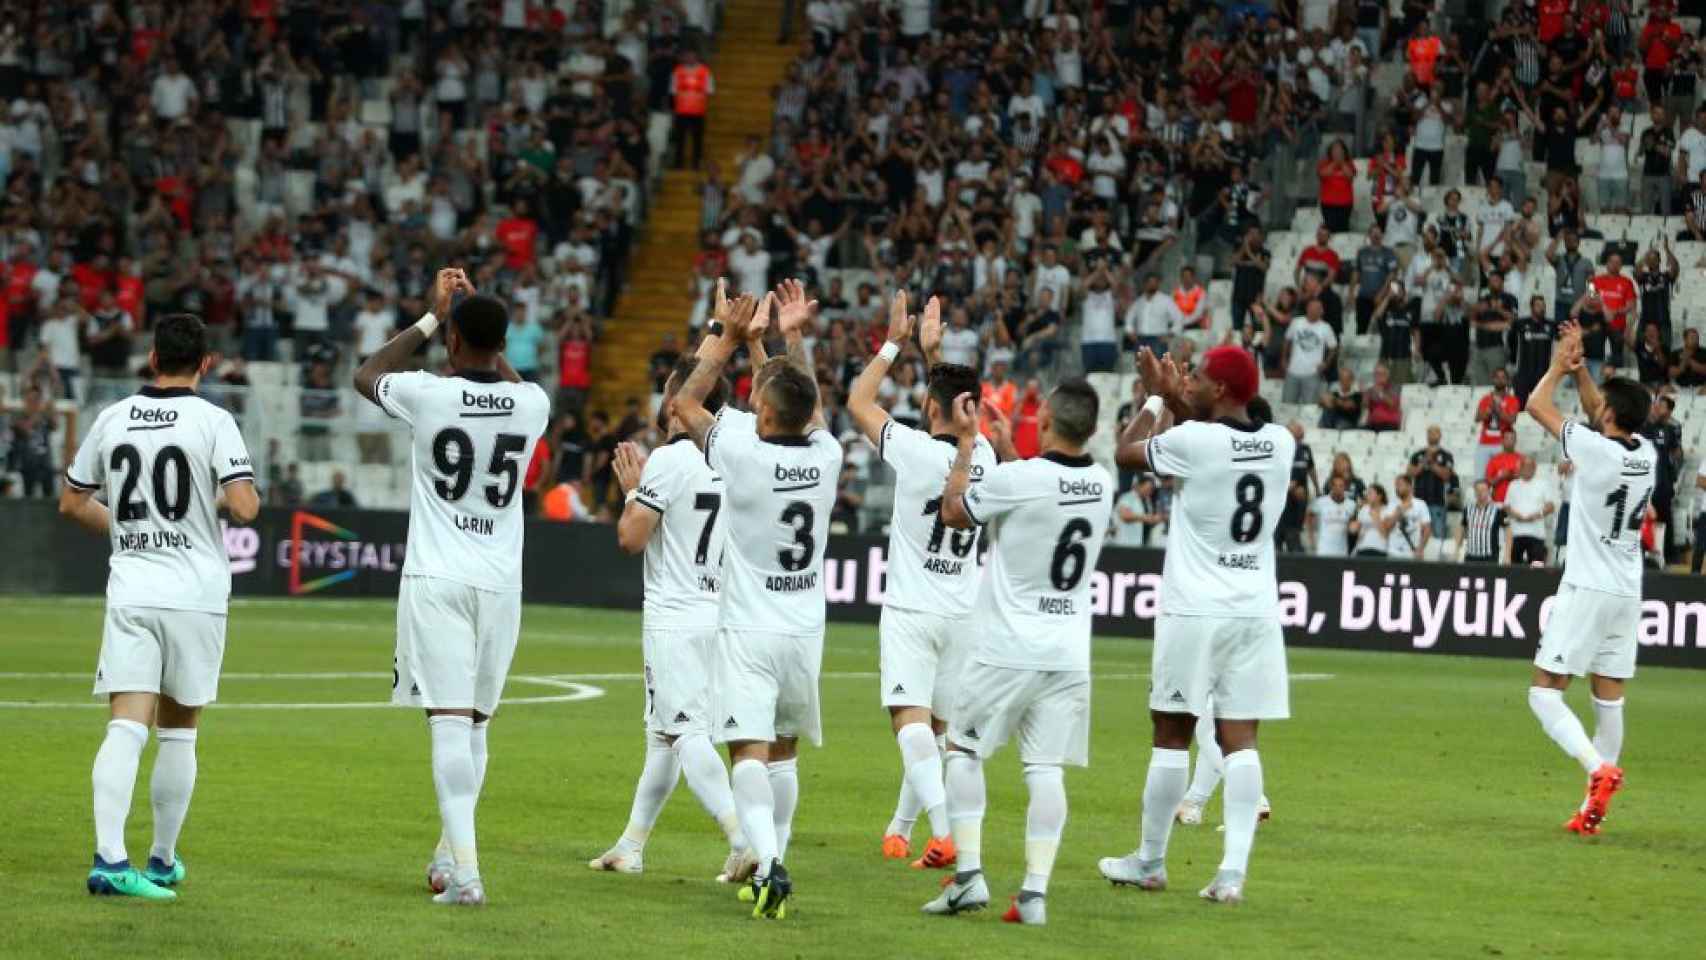 Jugadores del BEsiktas saludan a sua fición. Foto: bjk.com.tr